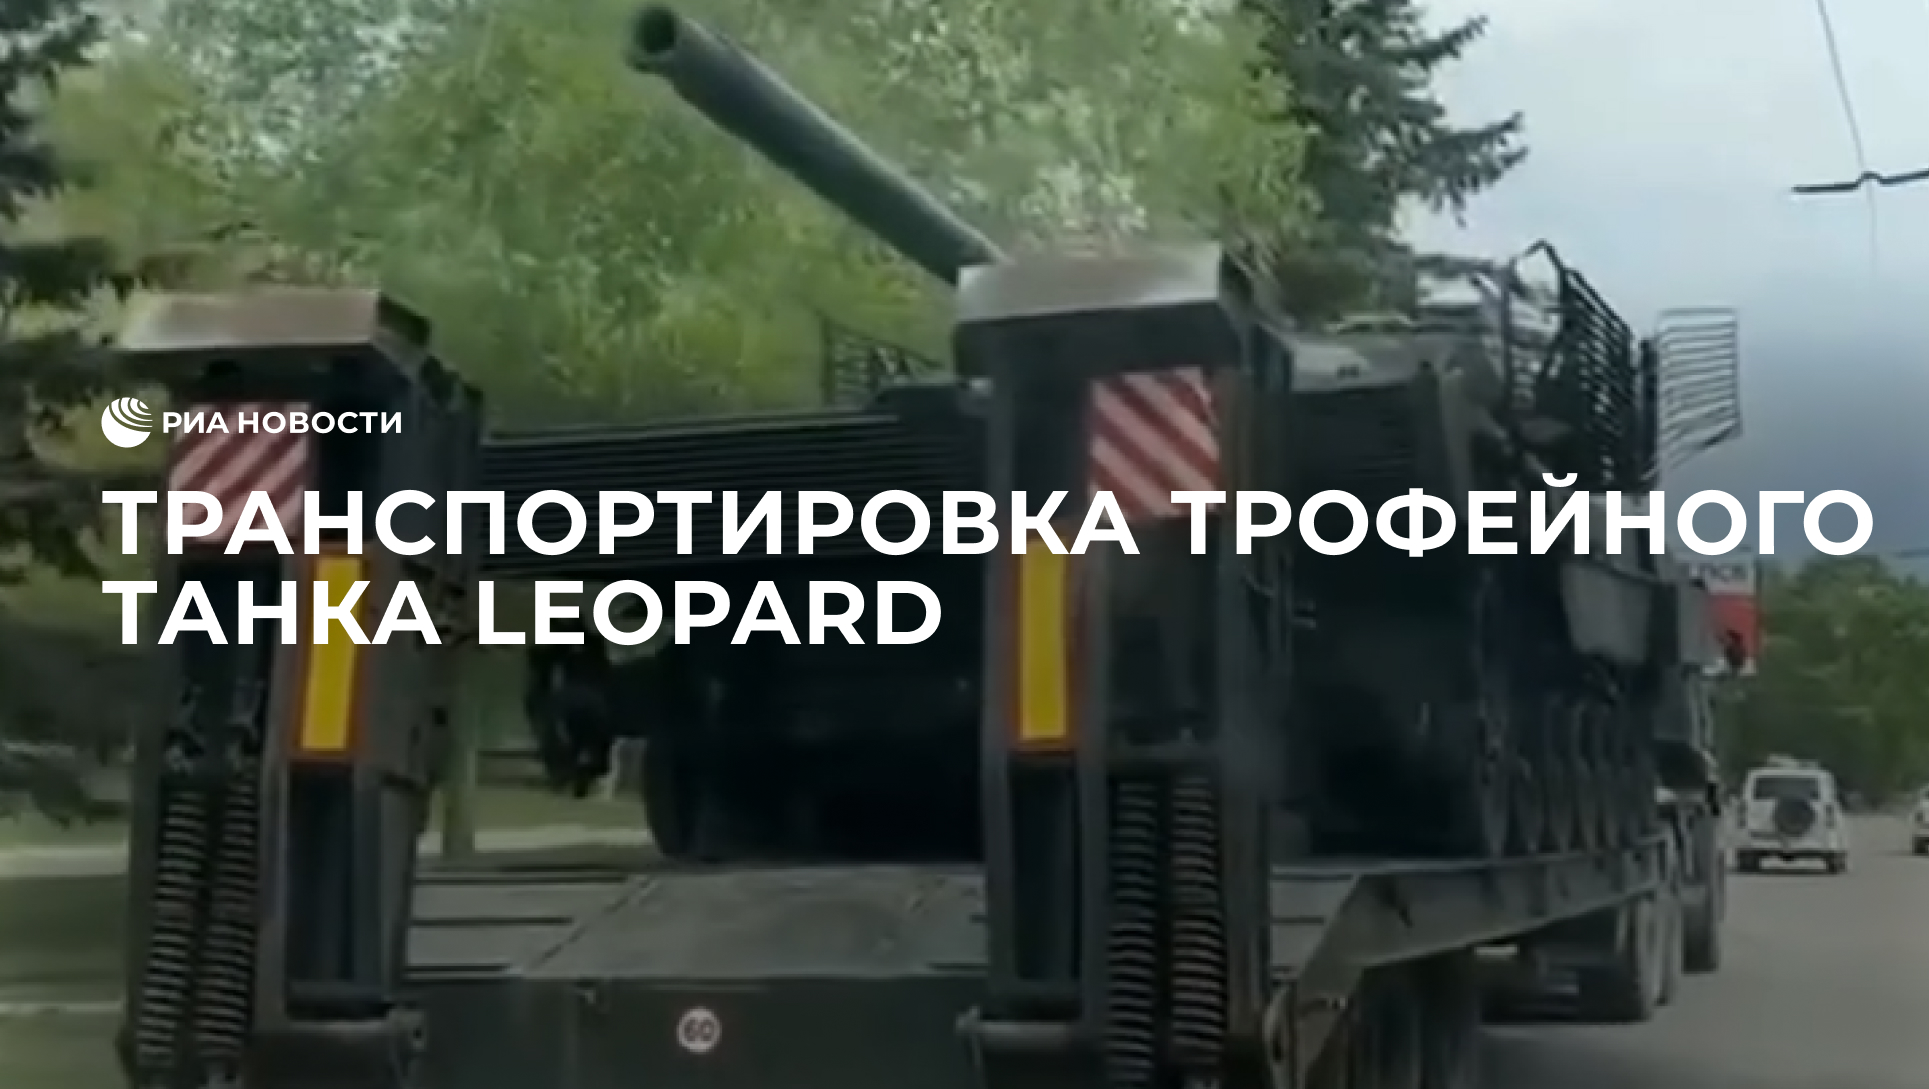 Транспортировка трофейного танка Leopard